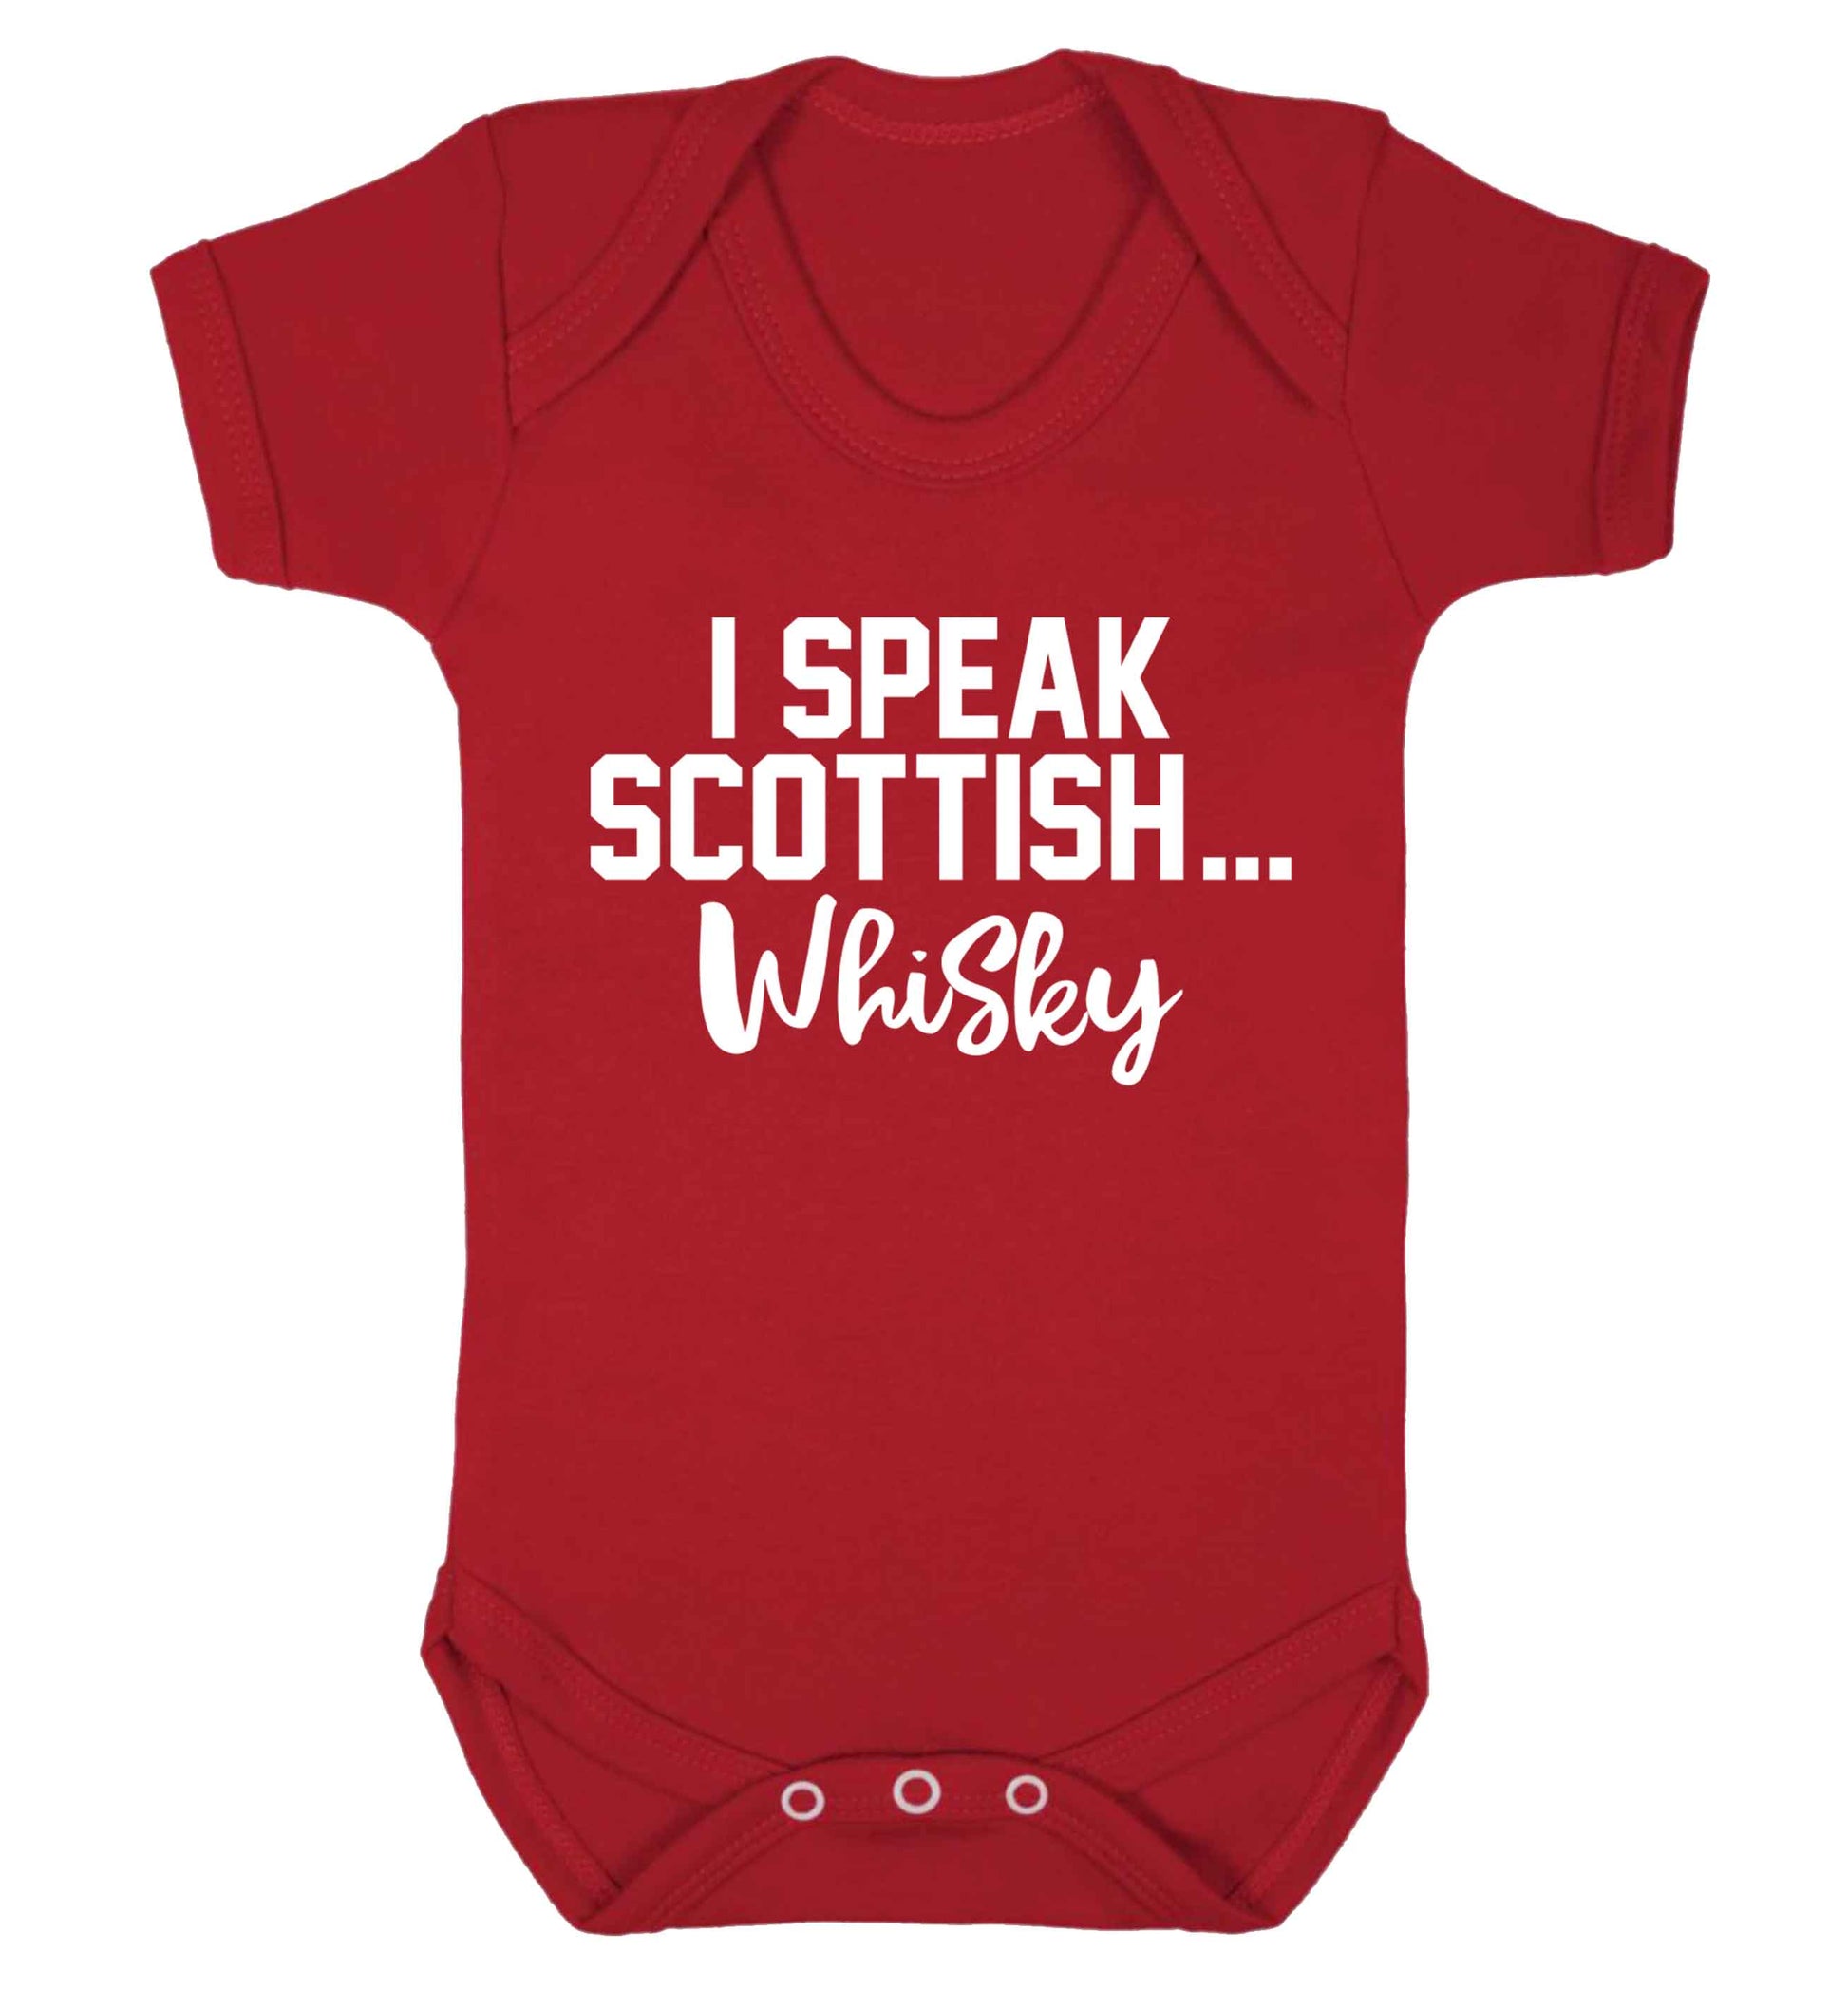 I speak scottish...whisky Baby Vest red 18-24 months